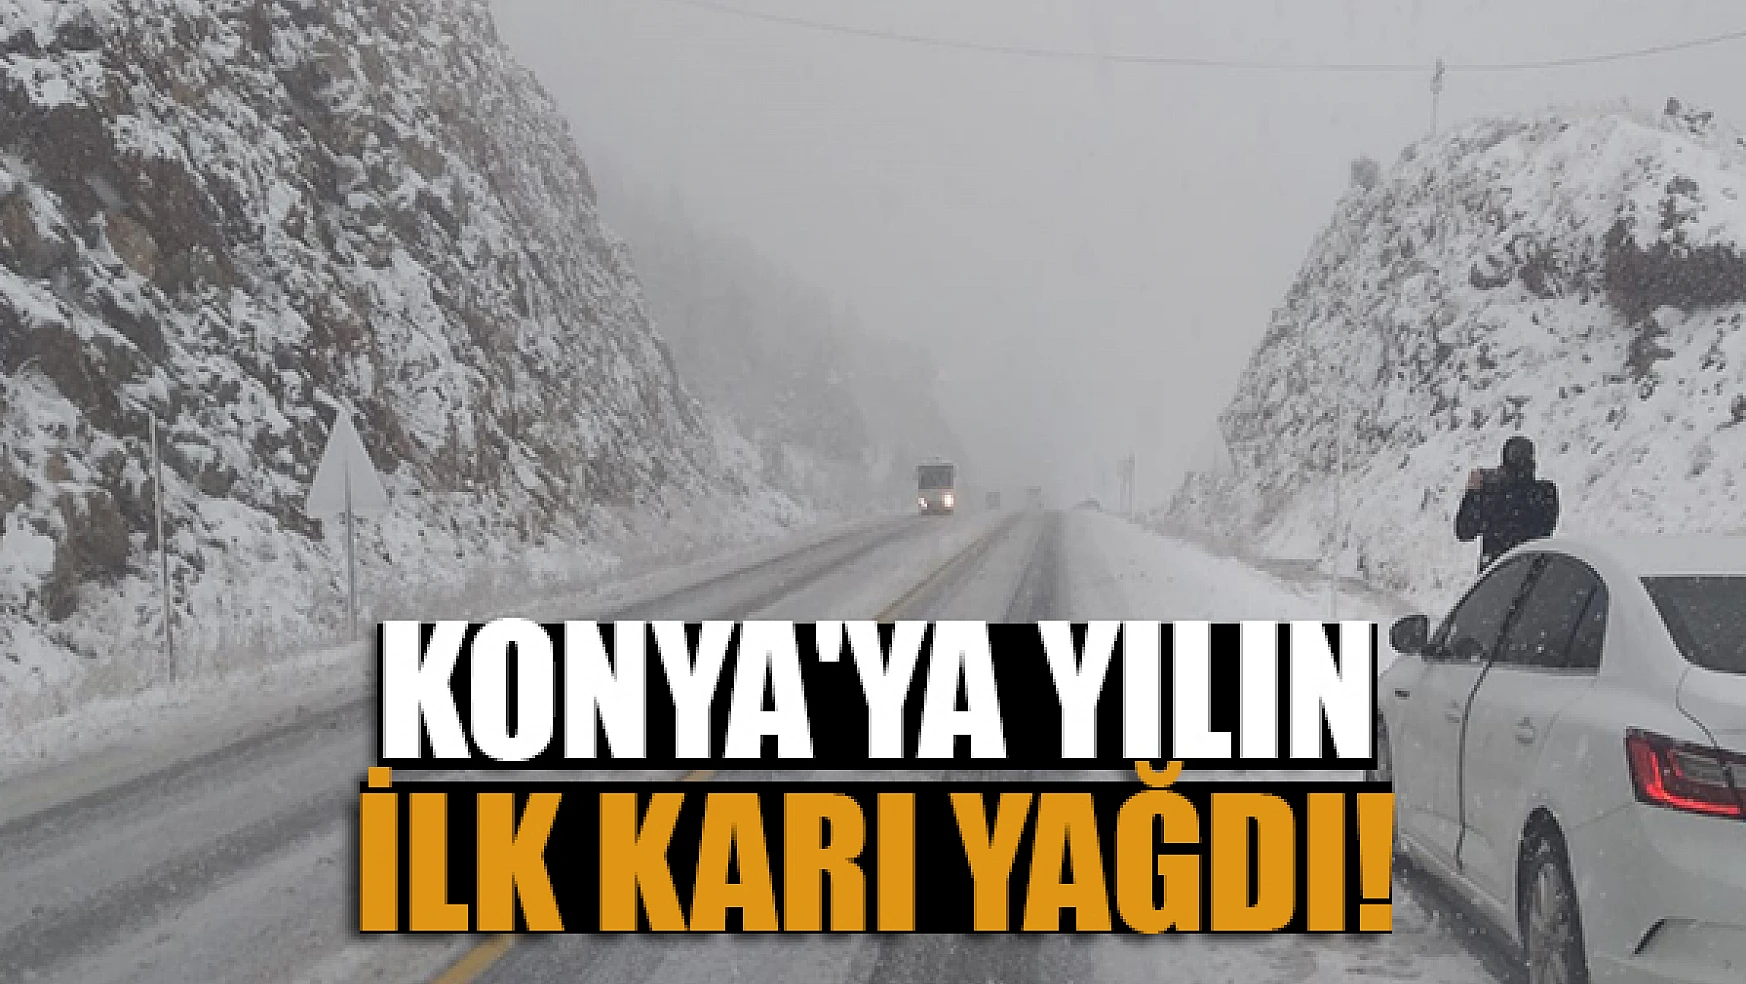 Konya'ya yılın ilk karı yağdı!